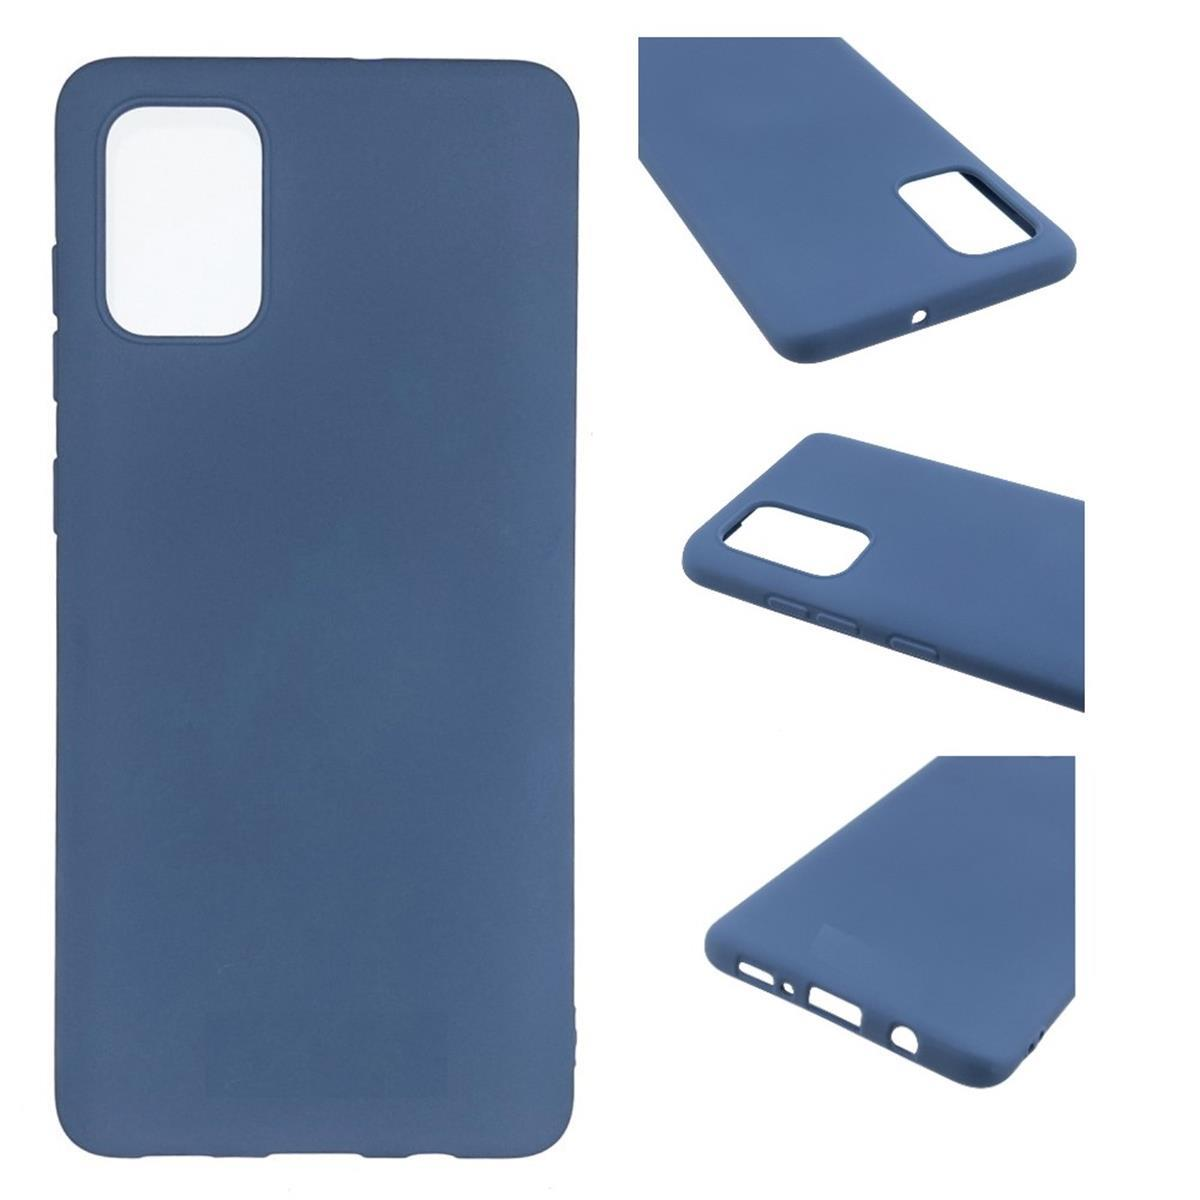 COVERKINGZ Handycase aus Silikon, Galaxy 5G/A52s Blau Samsung, Backcover, A52/A52 5G